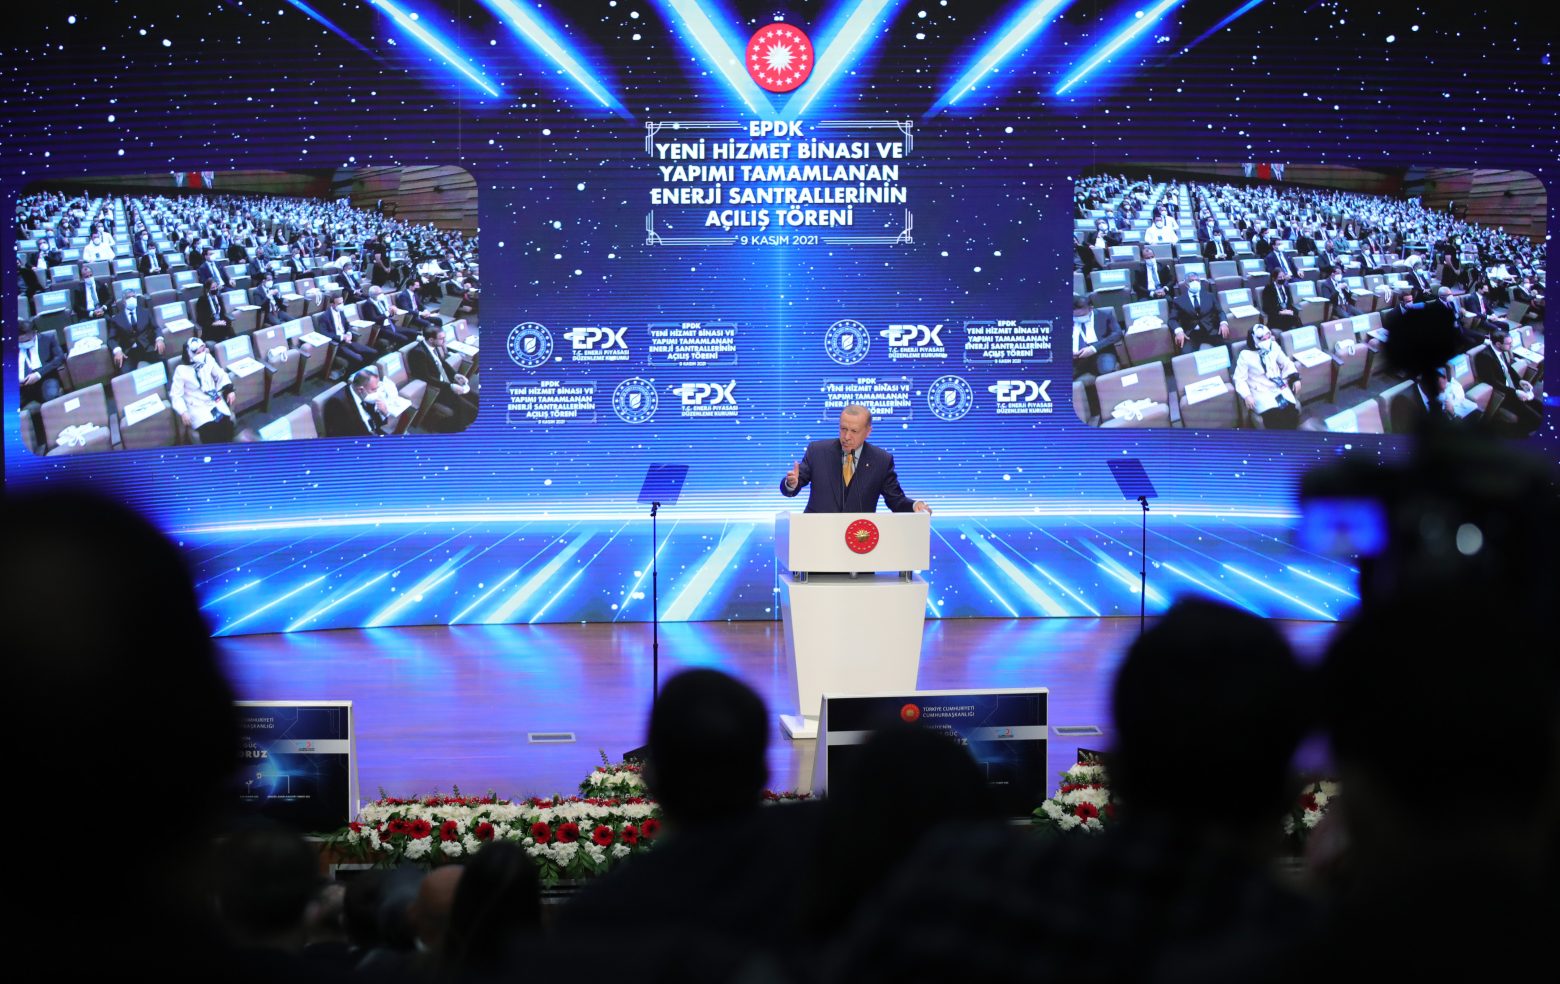 Ερντογάν - «Θα εξορύξουμε ό,τι υπάρχει σε Μαύρη Θάλασσα και Μεσόγειο» - Ετοιμάζει ακόμη δύο πυρηνικούς σταθμούς